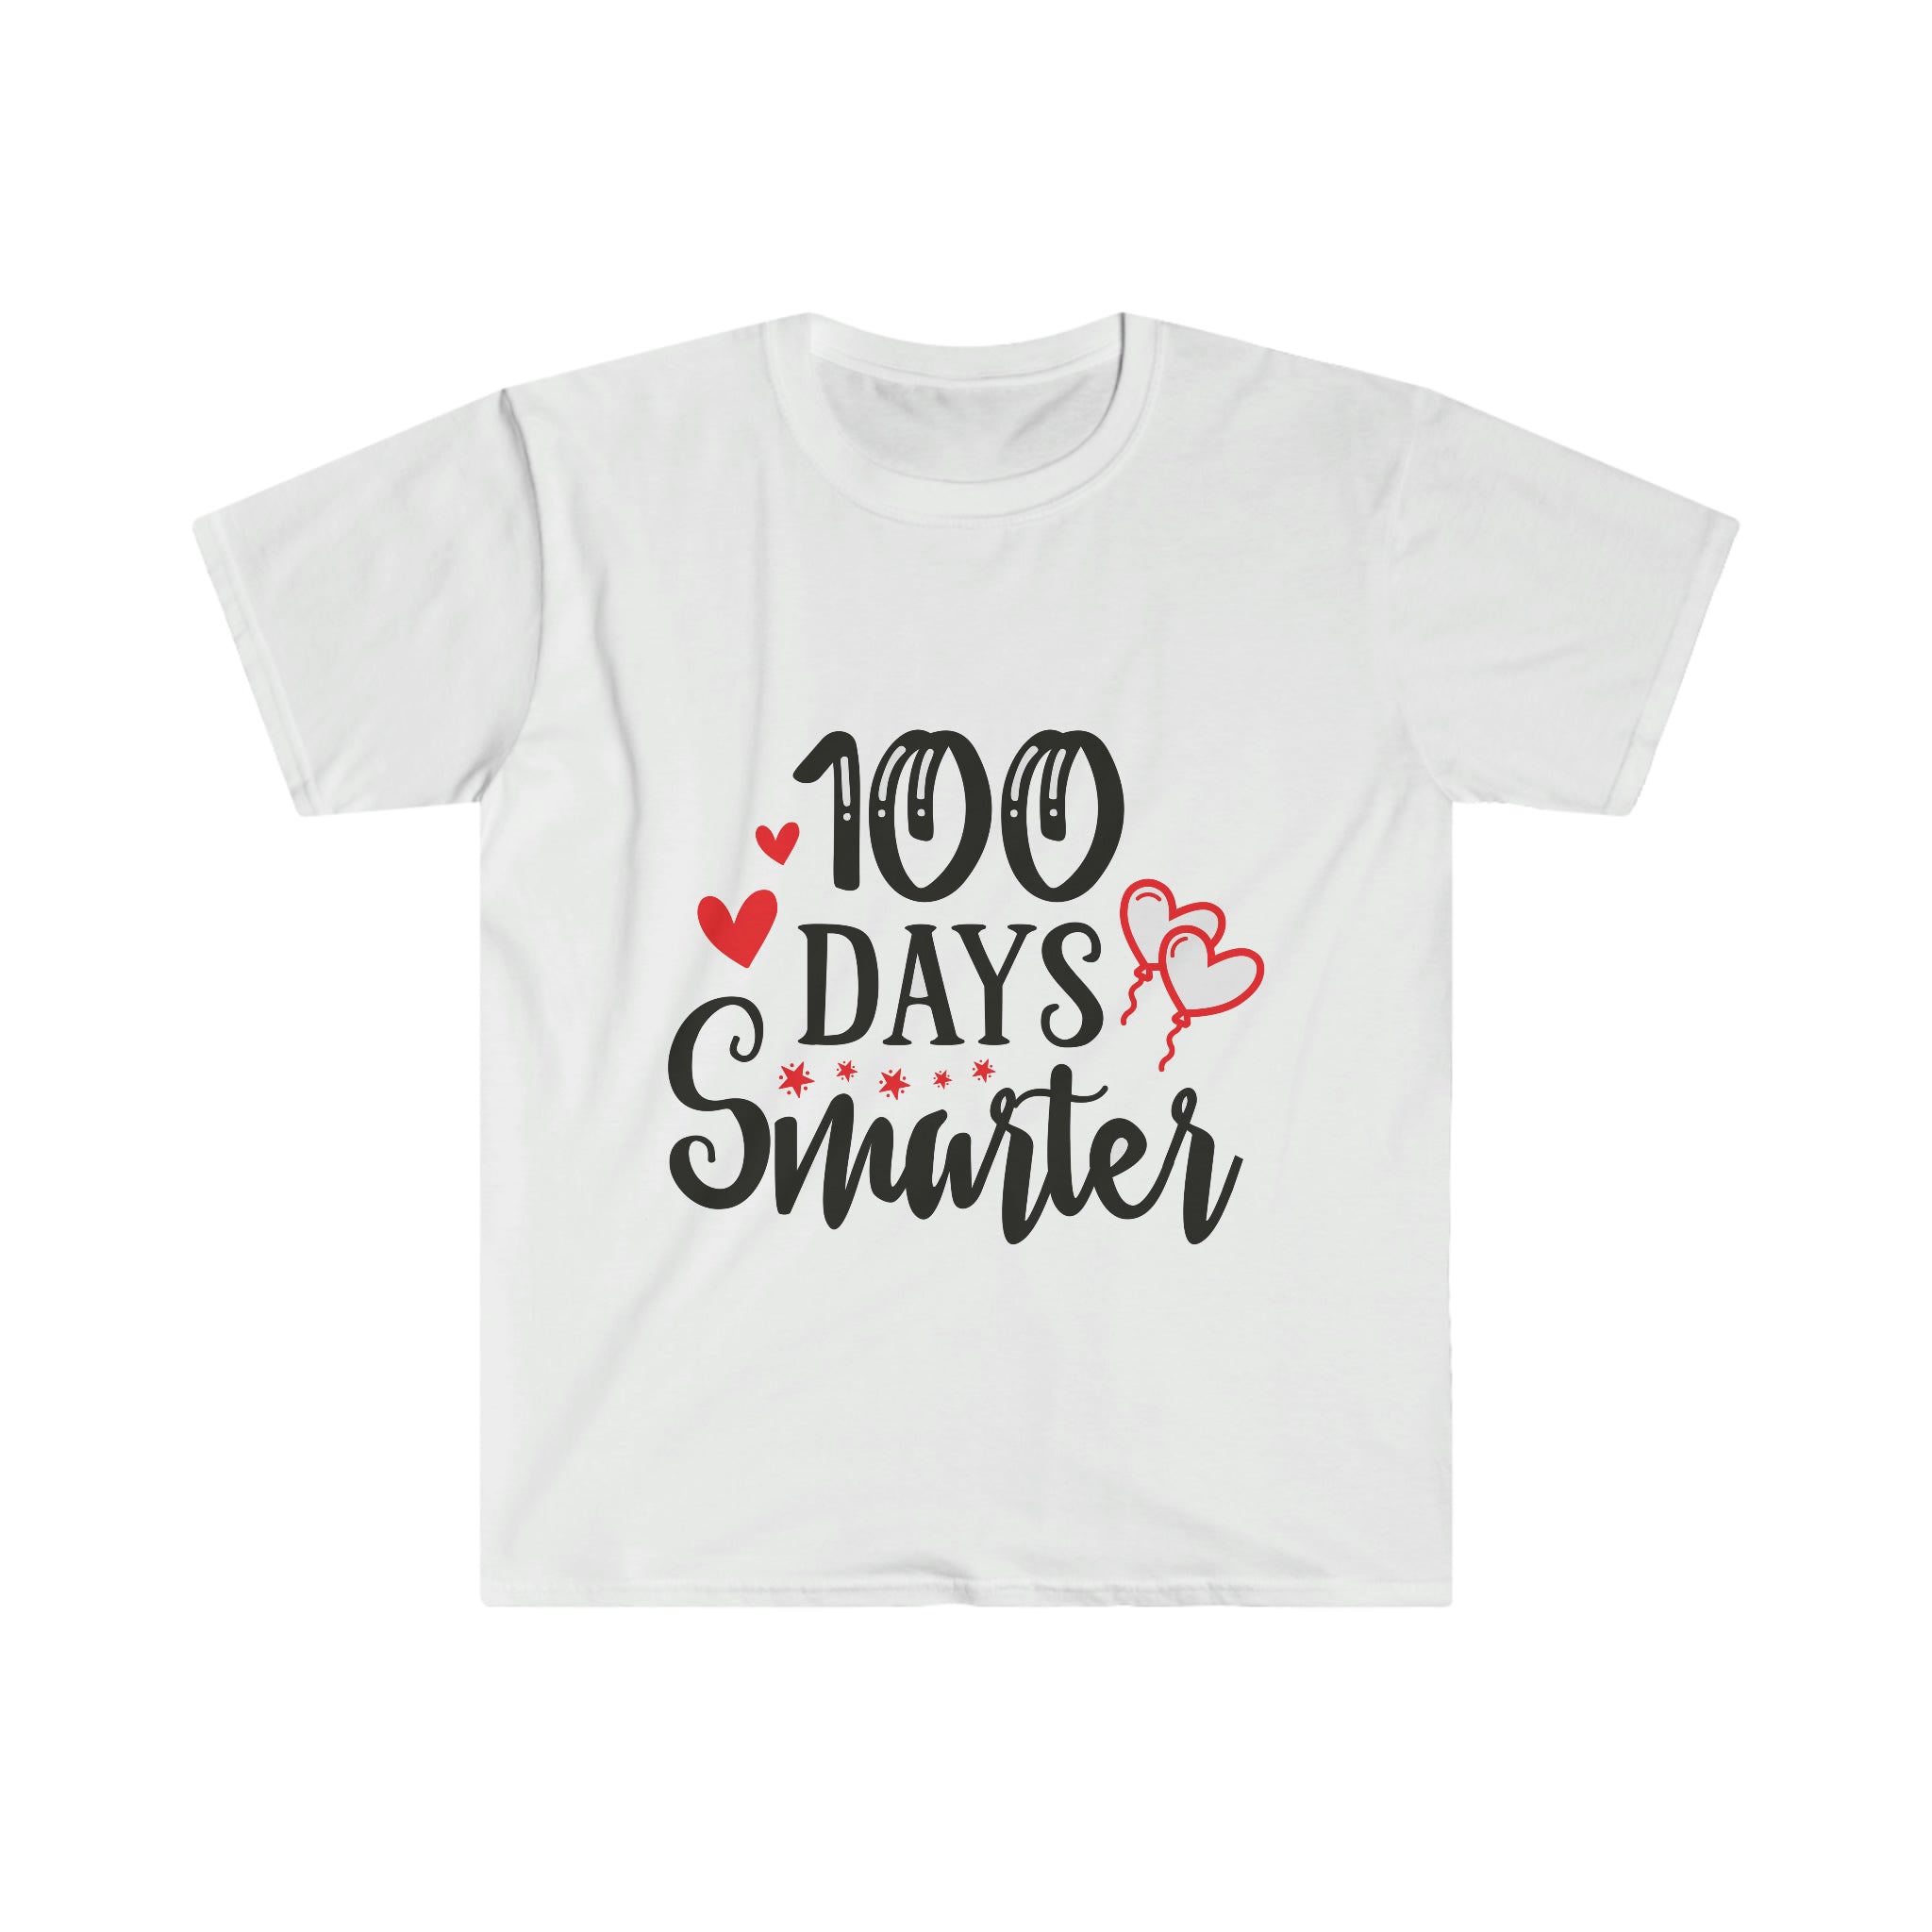 100 Days Smarter t-shirt.